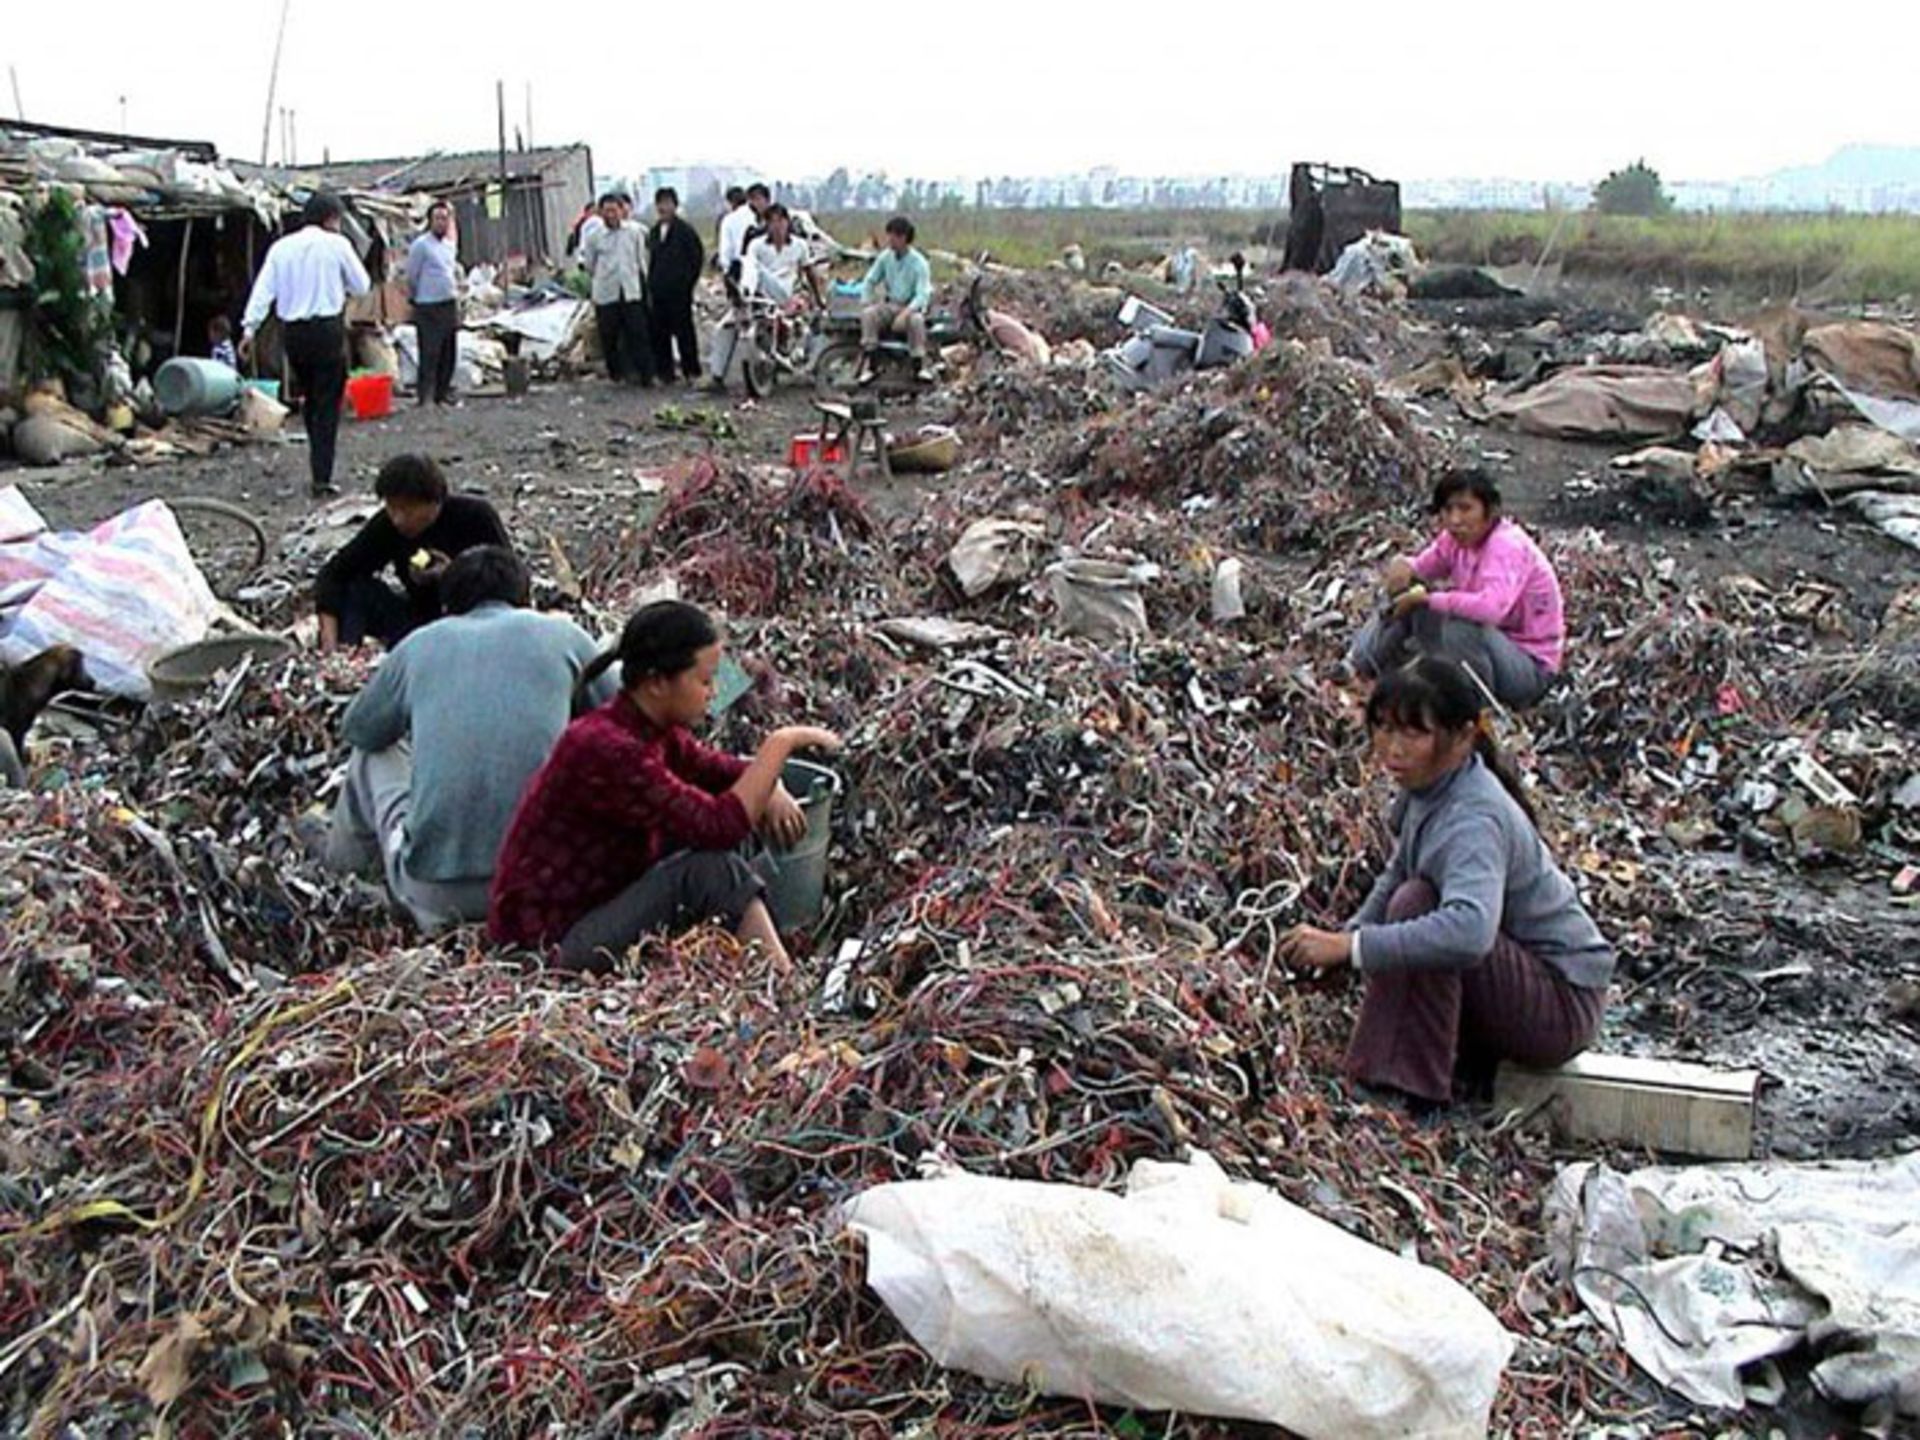 مرجع متخصصين ايران بازيافت زباله الكترونيكي در گوييو